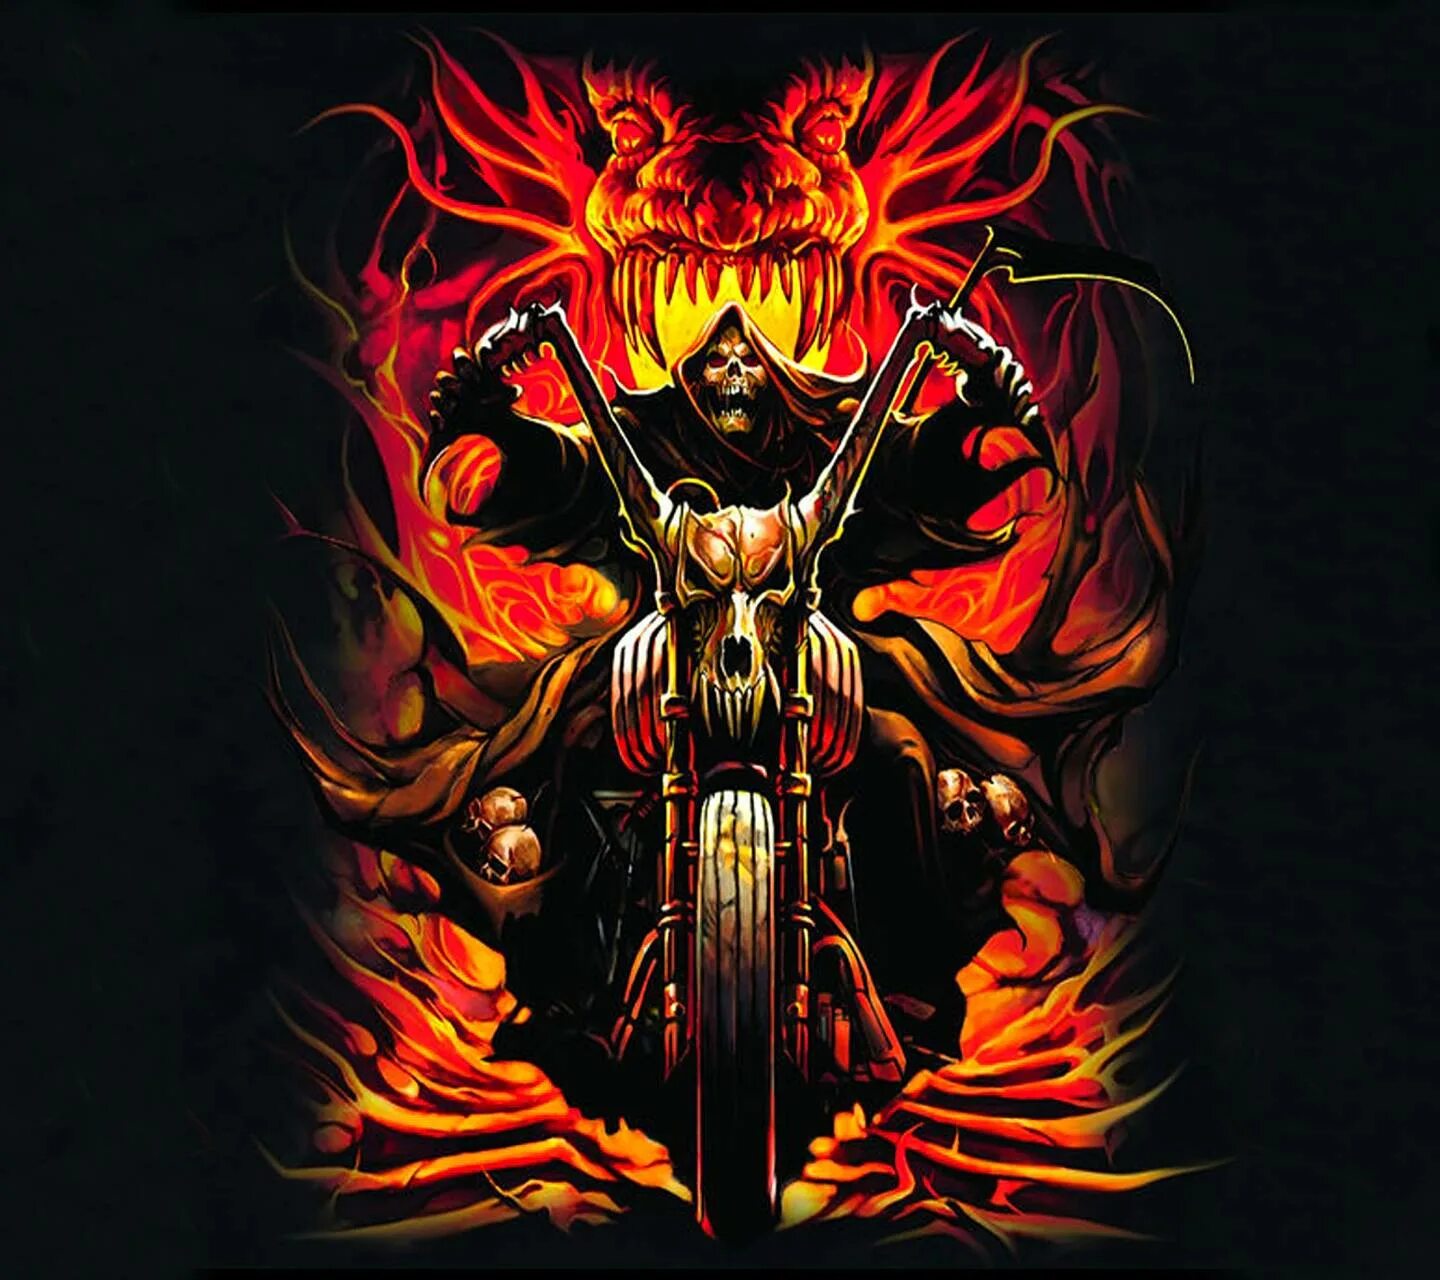 Огненный скелет. Обложка в стиле металл. Хеви метал обои.